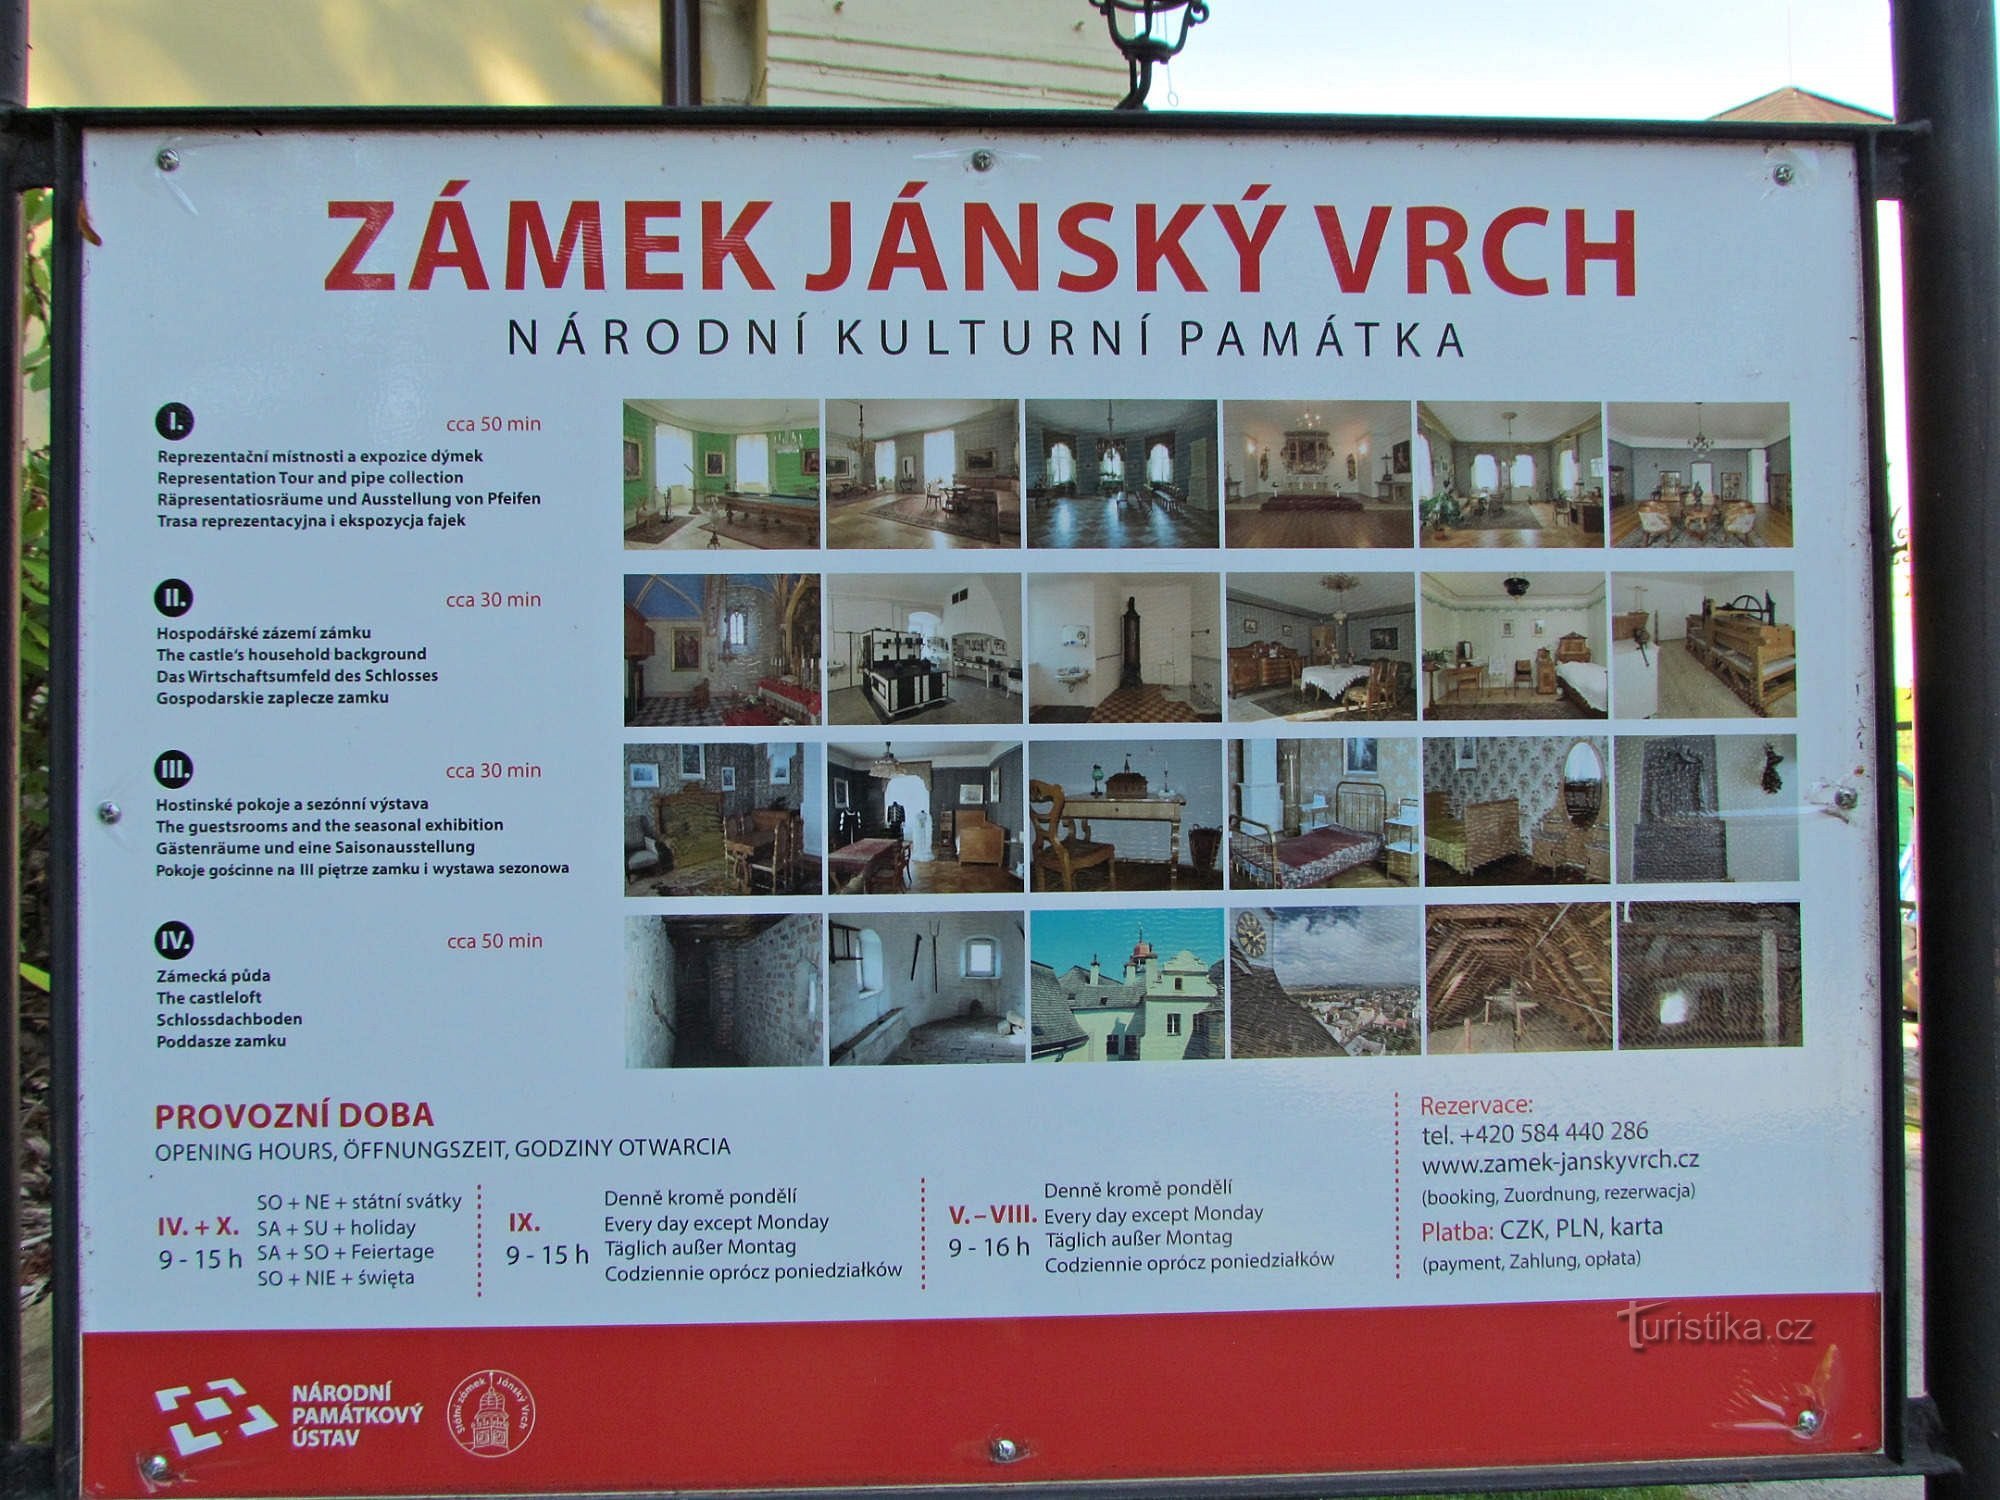 NÚI VÀNG 2020 - 6. Trong chuyến tham quan lâu đài Jánský vrch